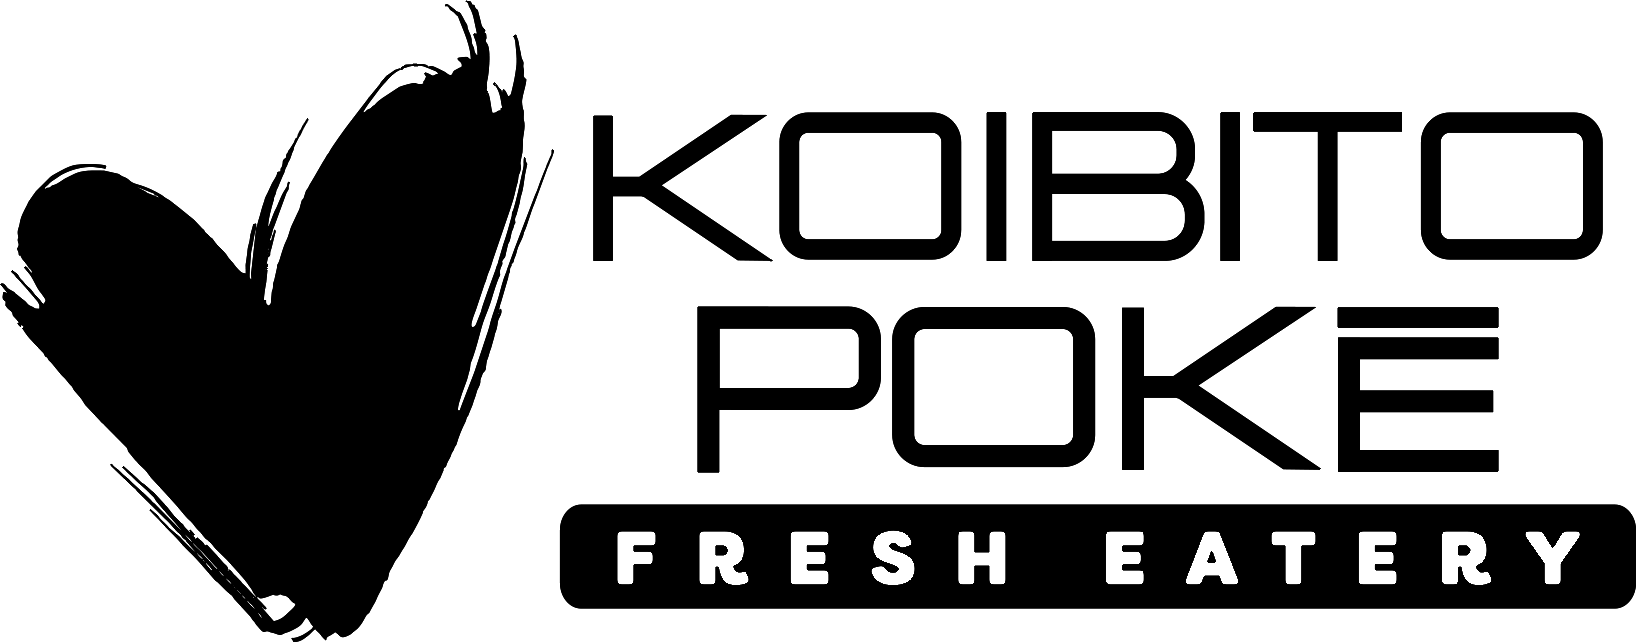 Koibito Poke Fresh Eatery Black Text Logo With Heart